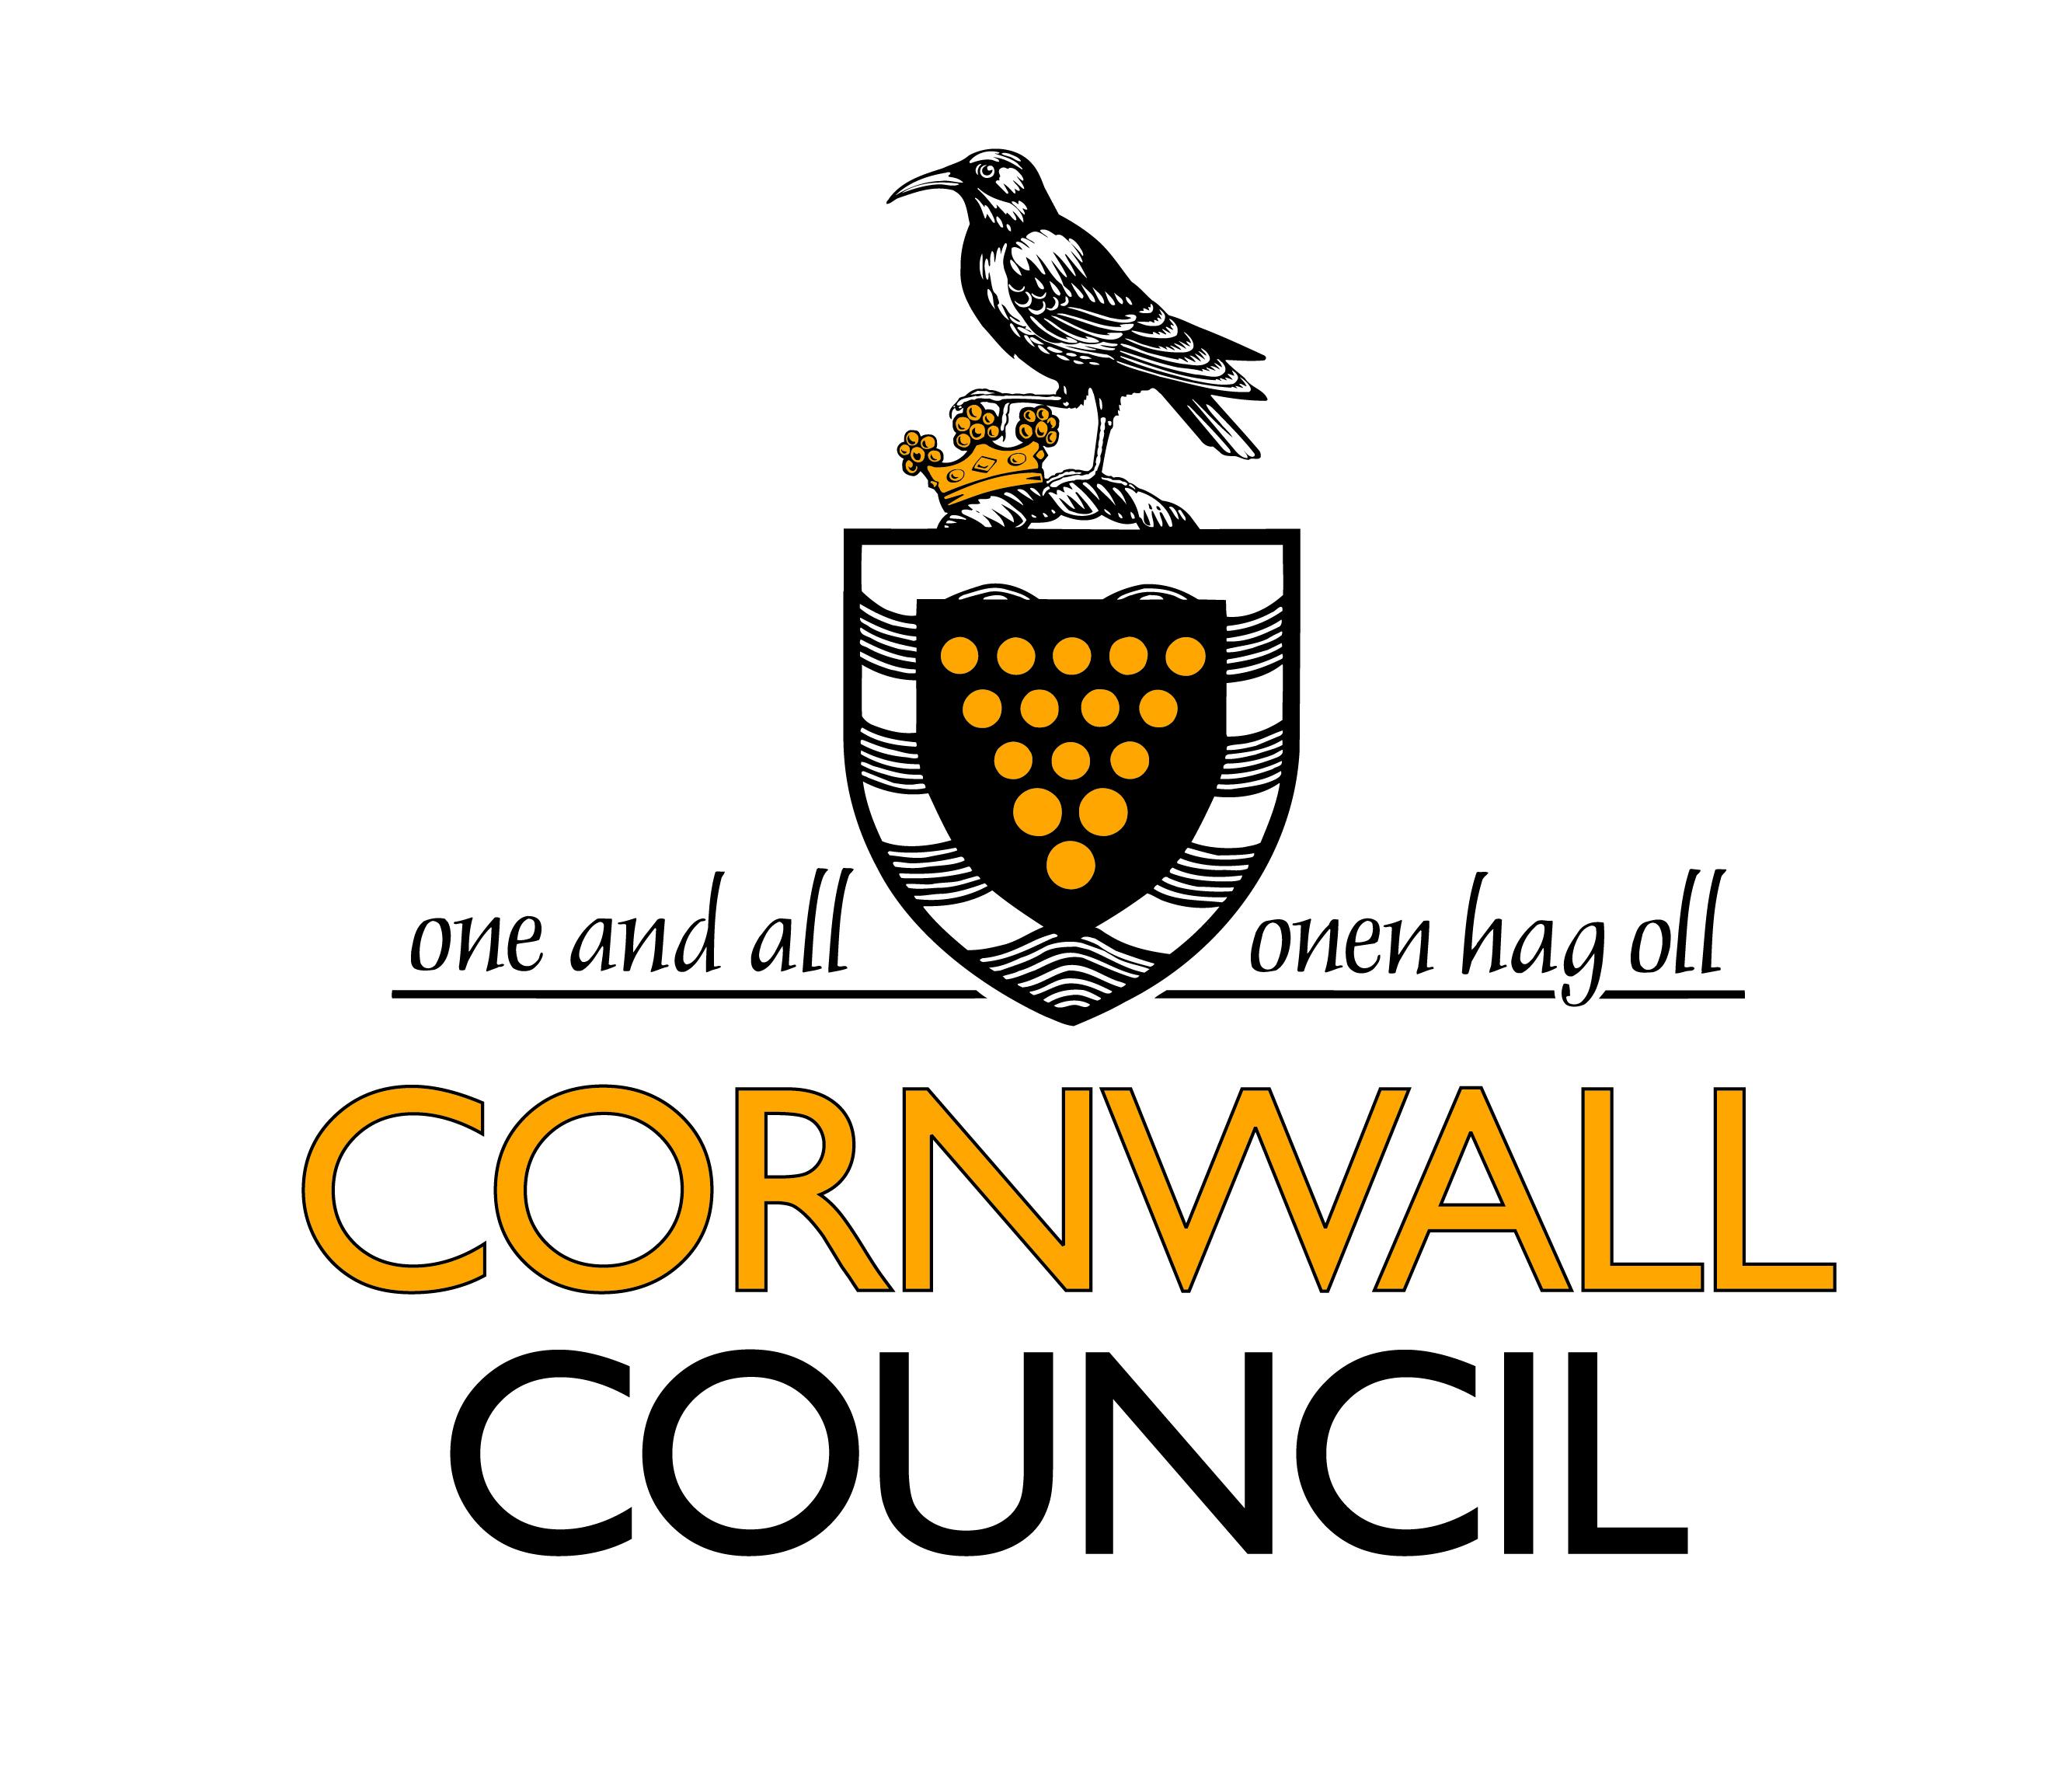 Conrwall council logo